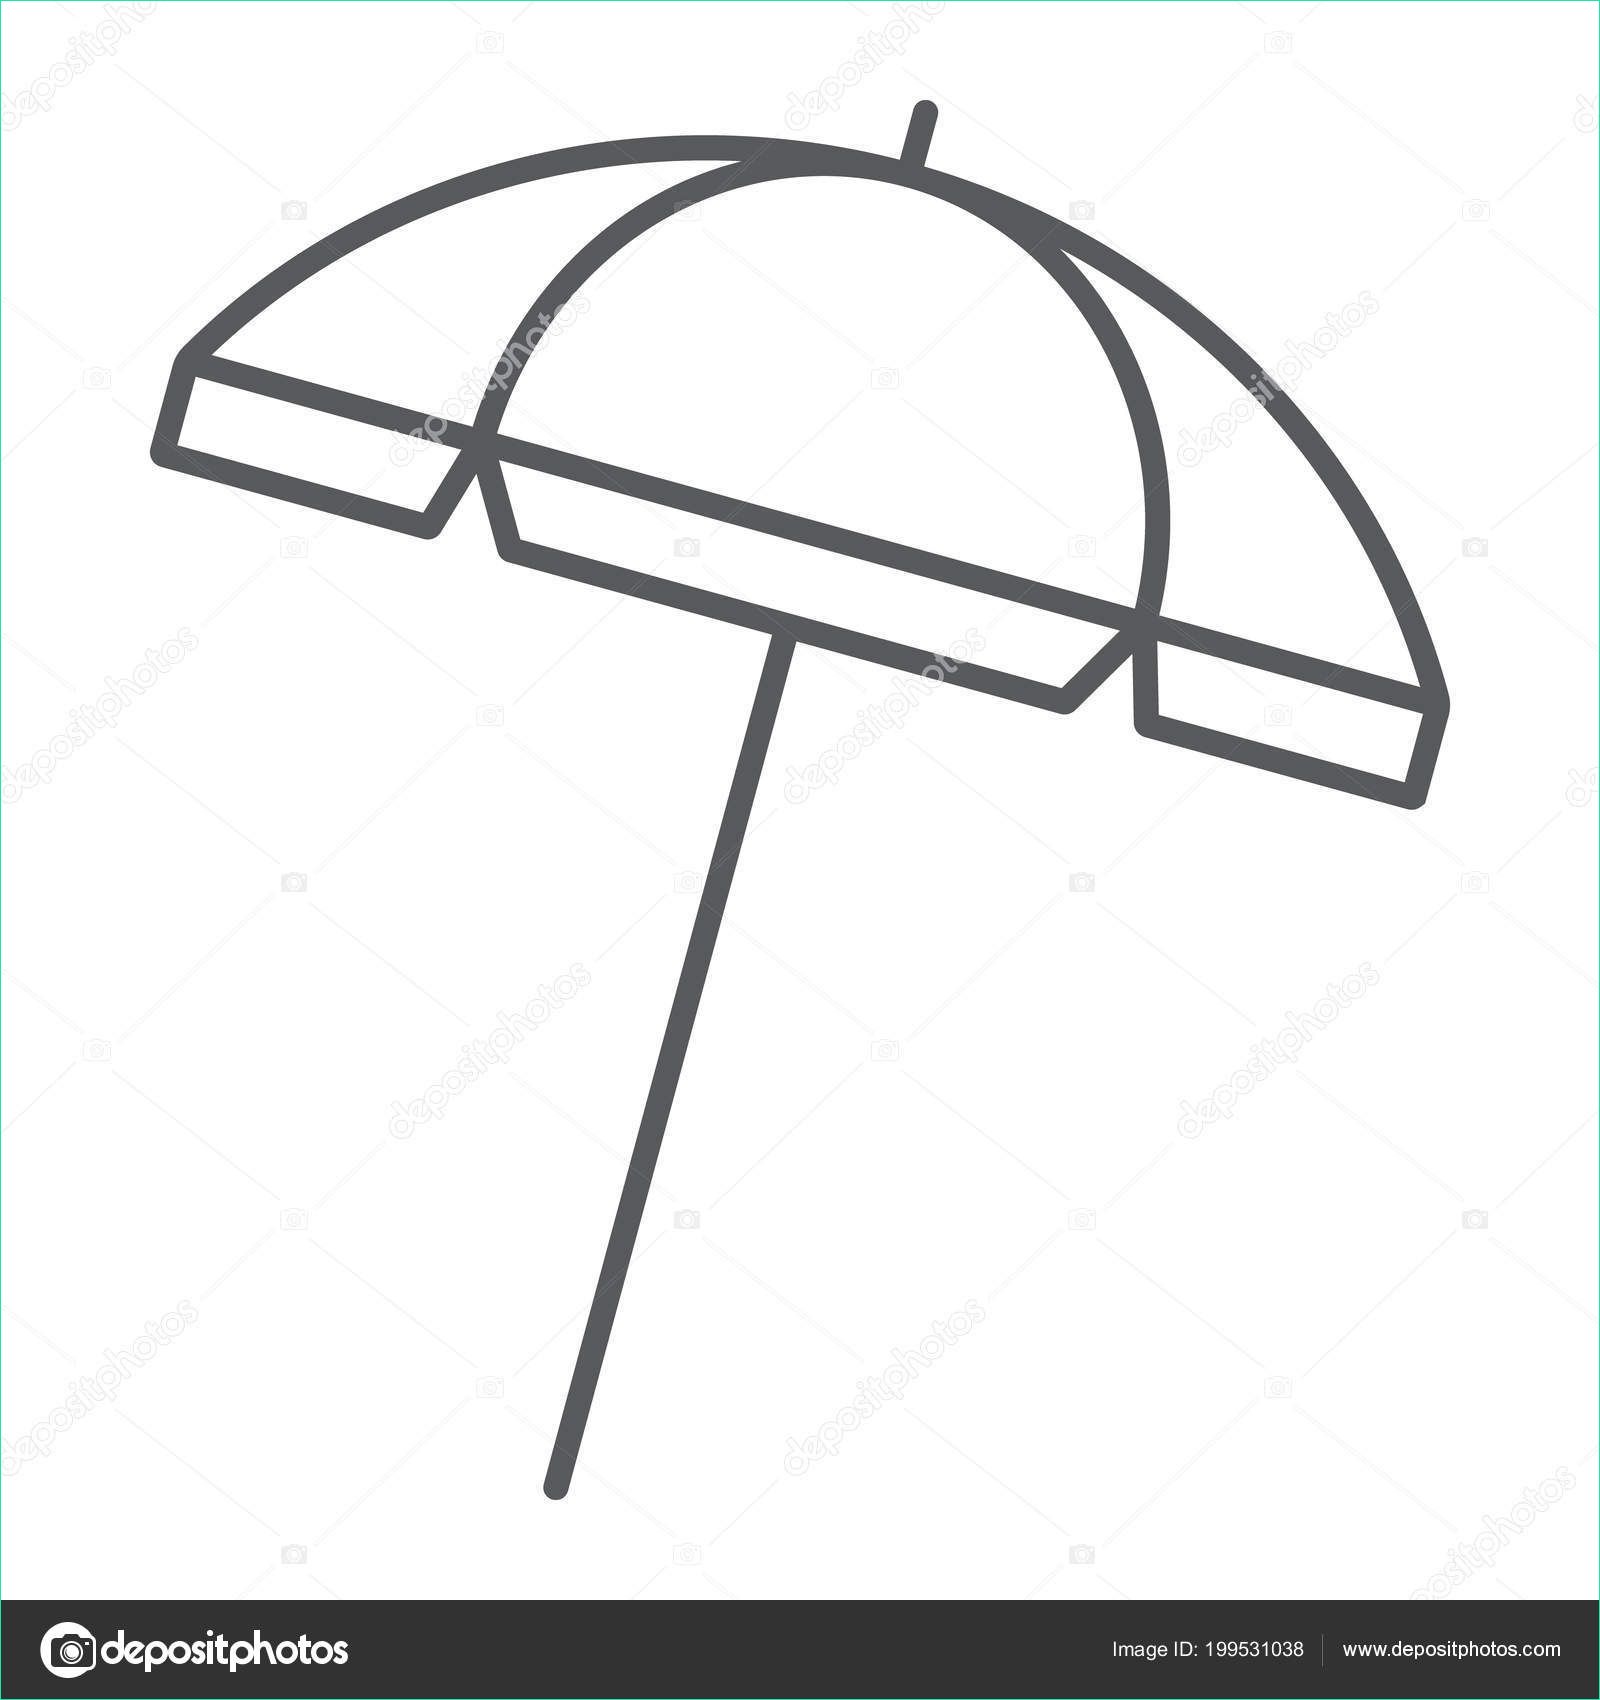 13 nouveau de dessin de parasol images